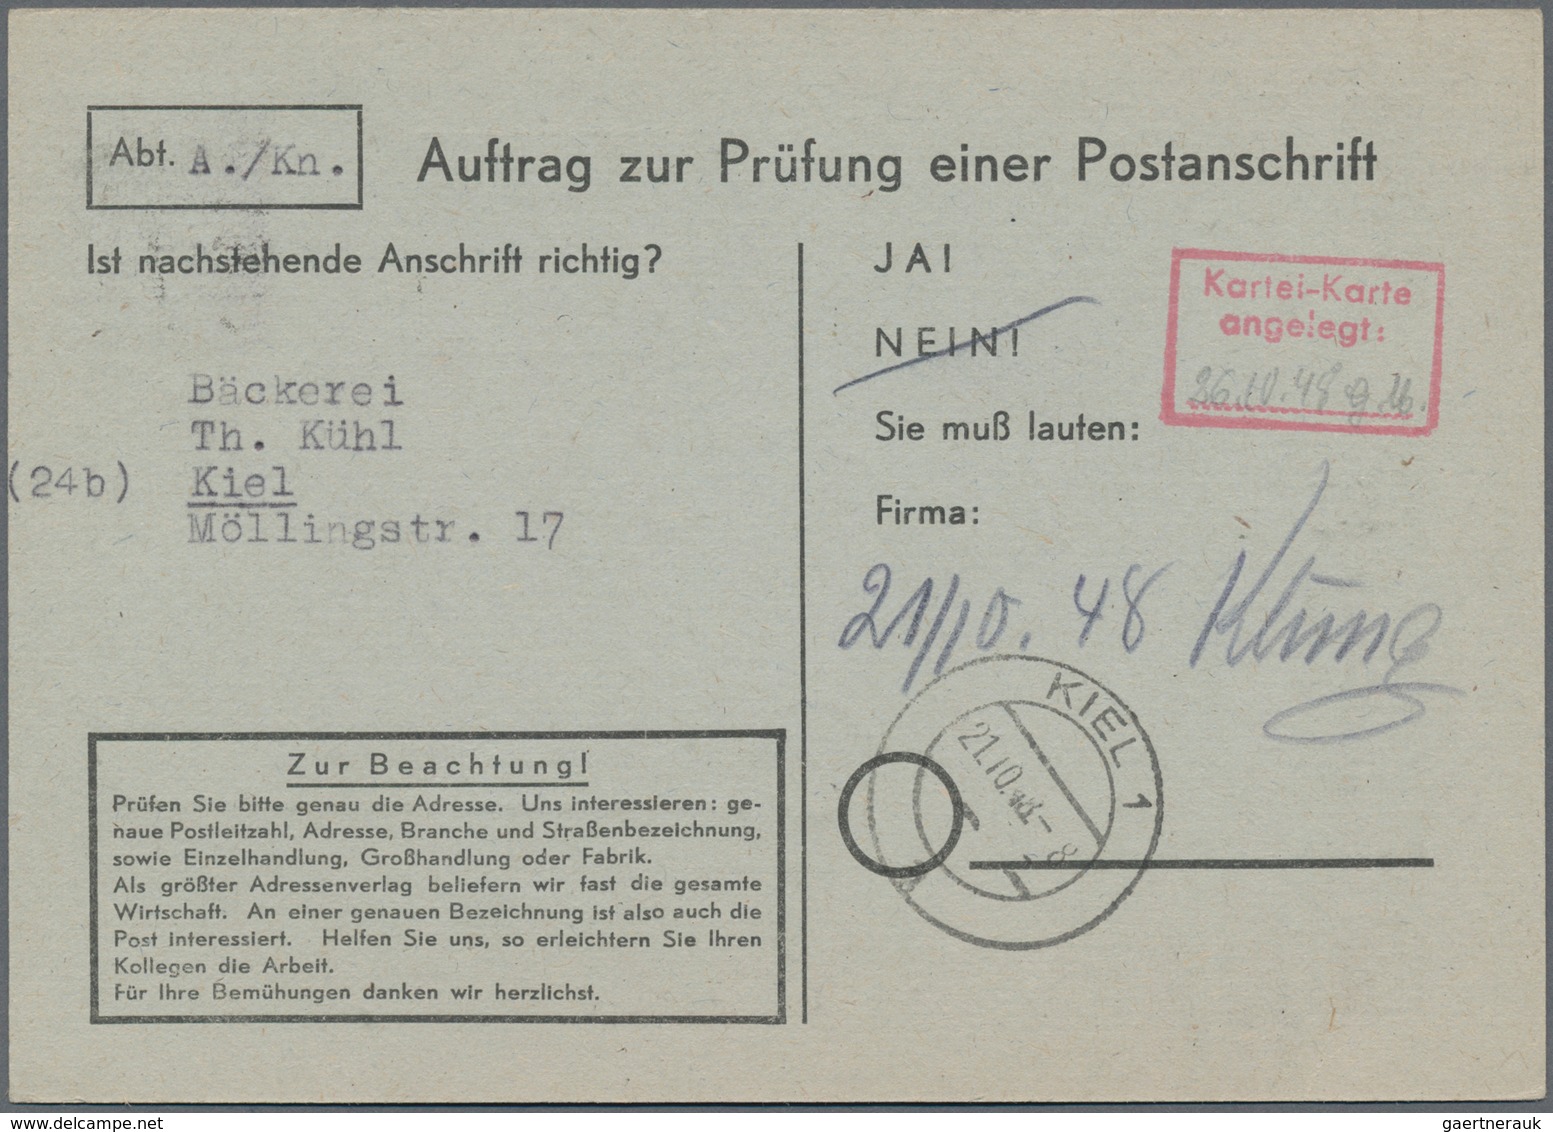 Berlin: 1948, 6 Pf. Schwarzaufdruck Mit Masch.Stpl. BERLIN SW 61 / 8.10.48 Auf Vorgedruckter Anschri - Covers & Documents